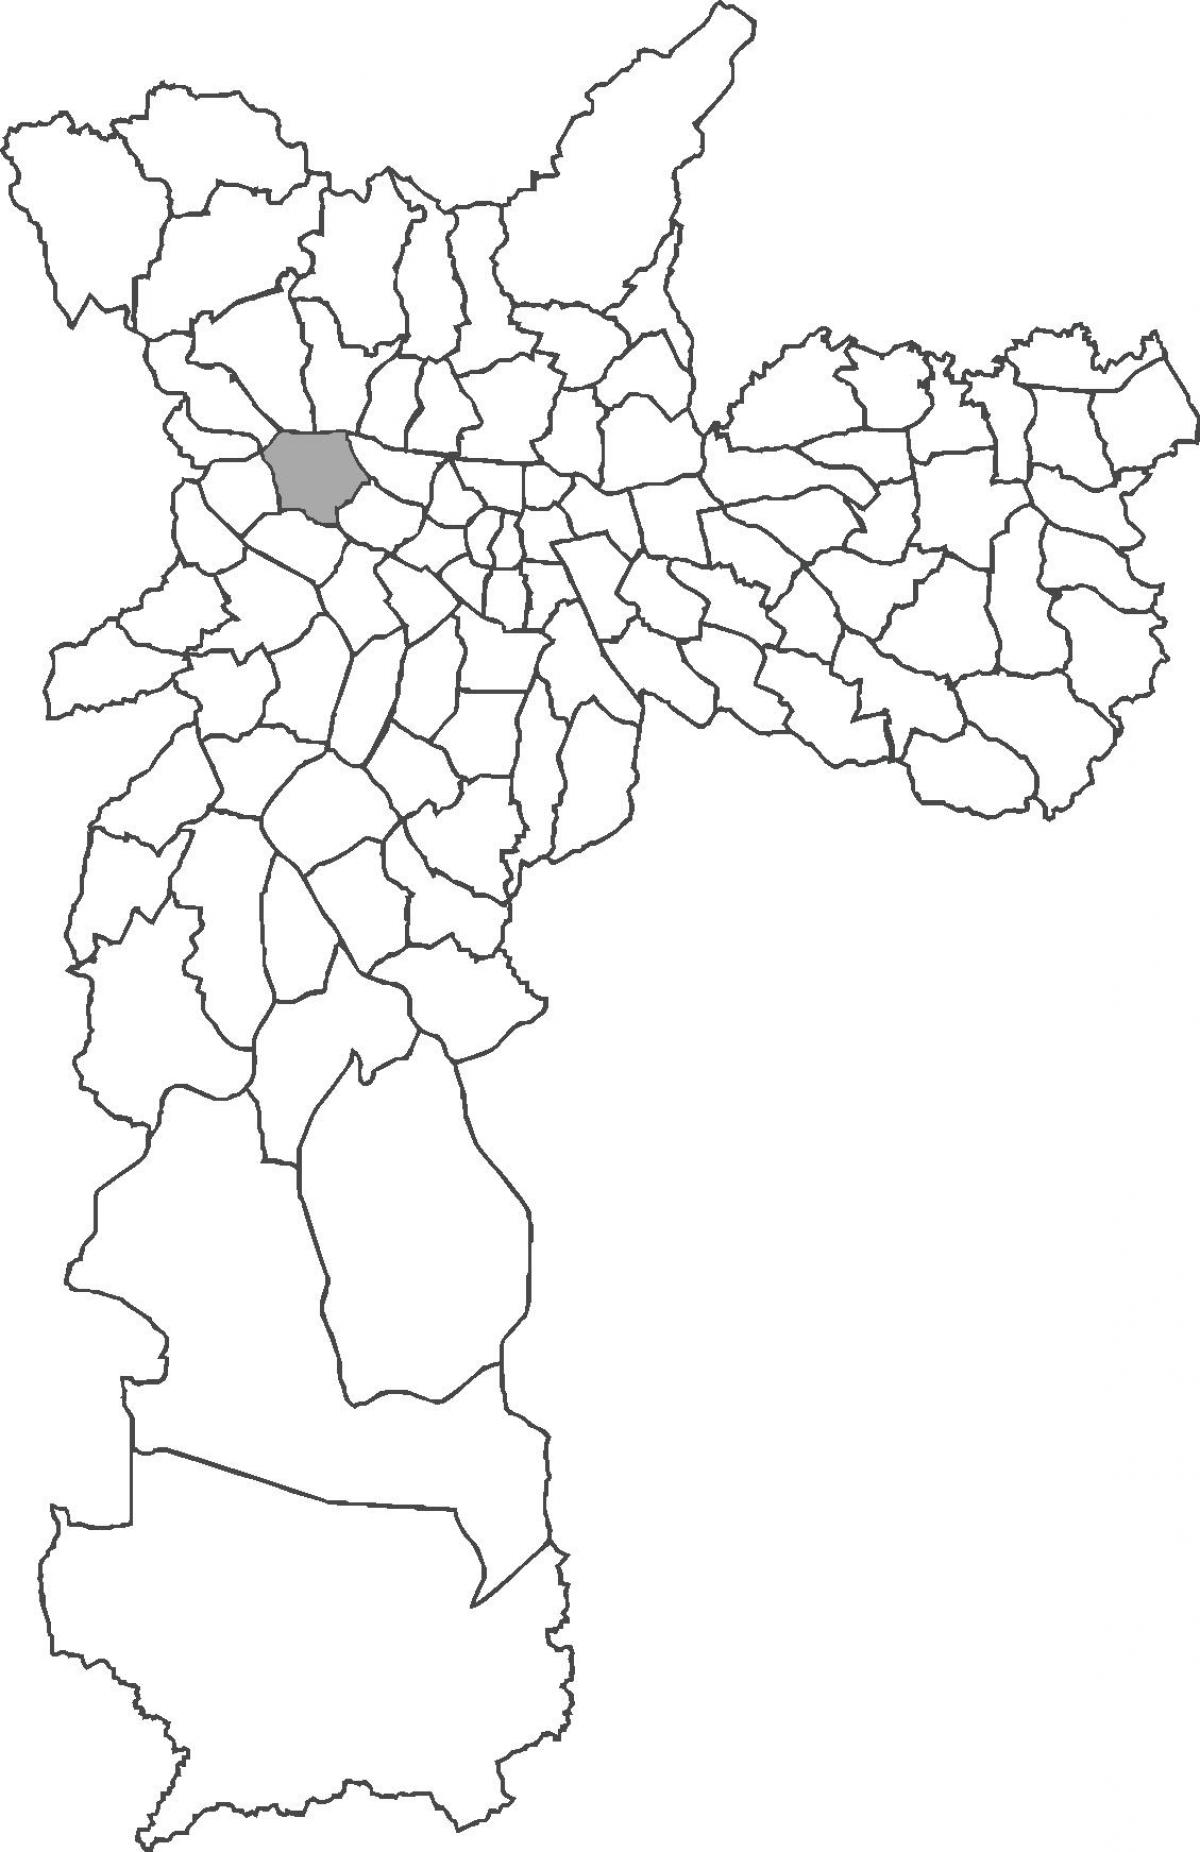 মানচিত্র Lapa জেলা